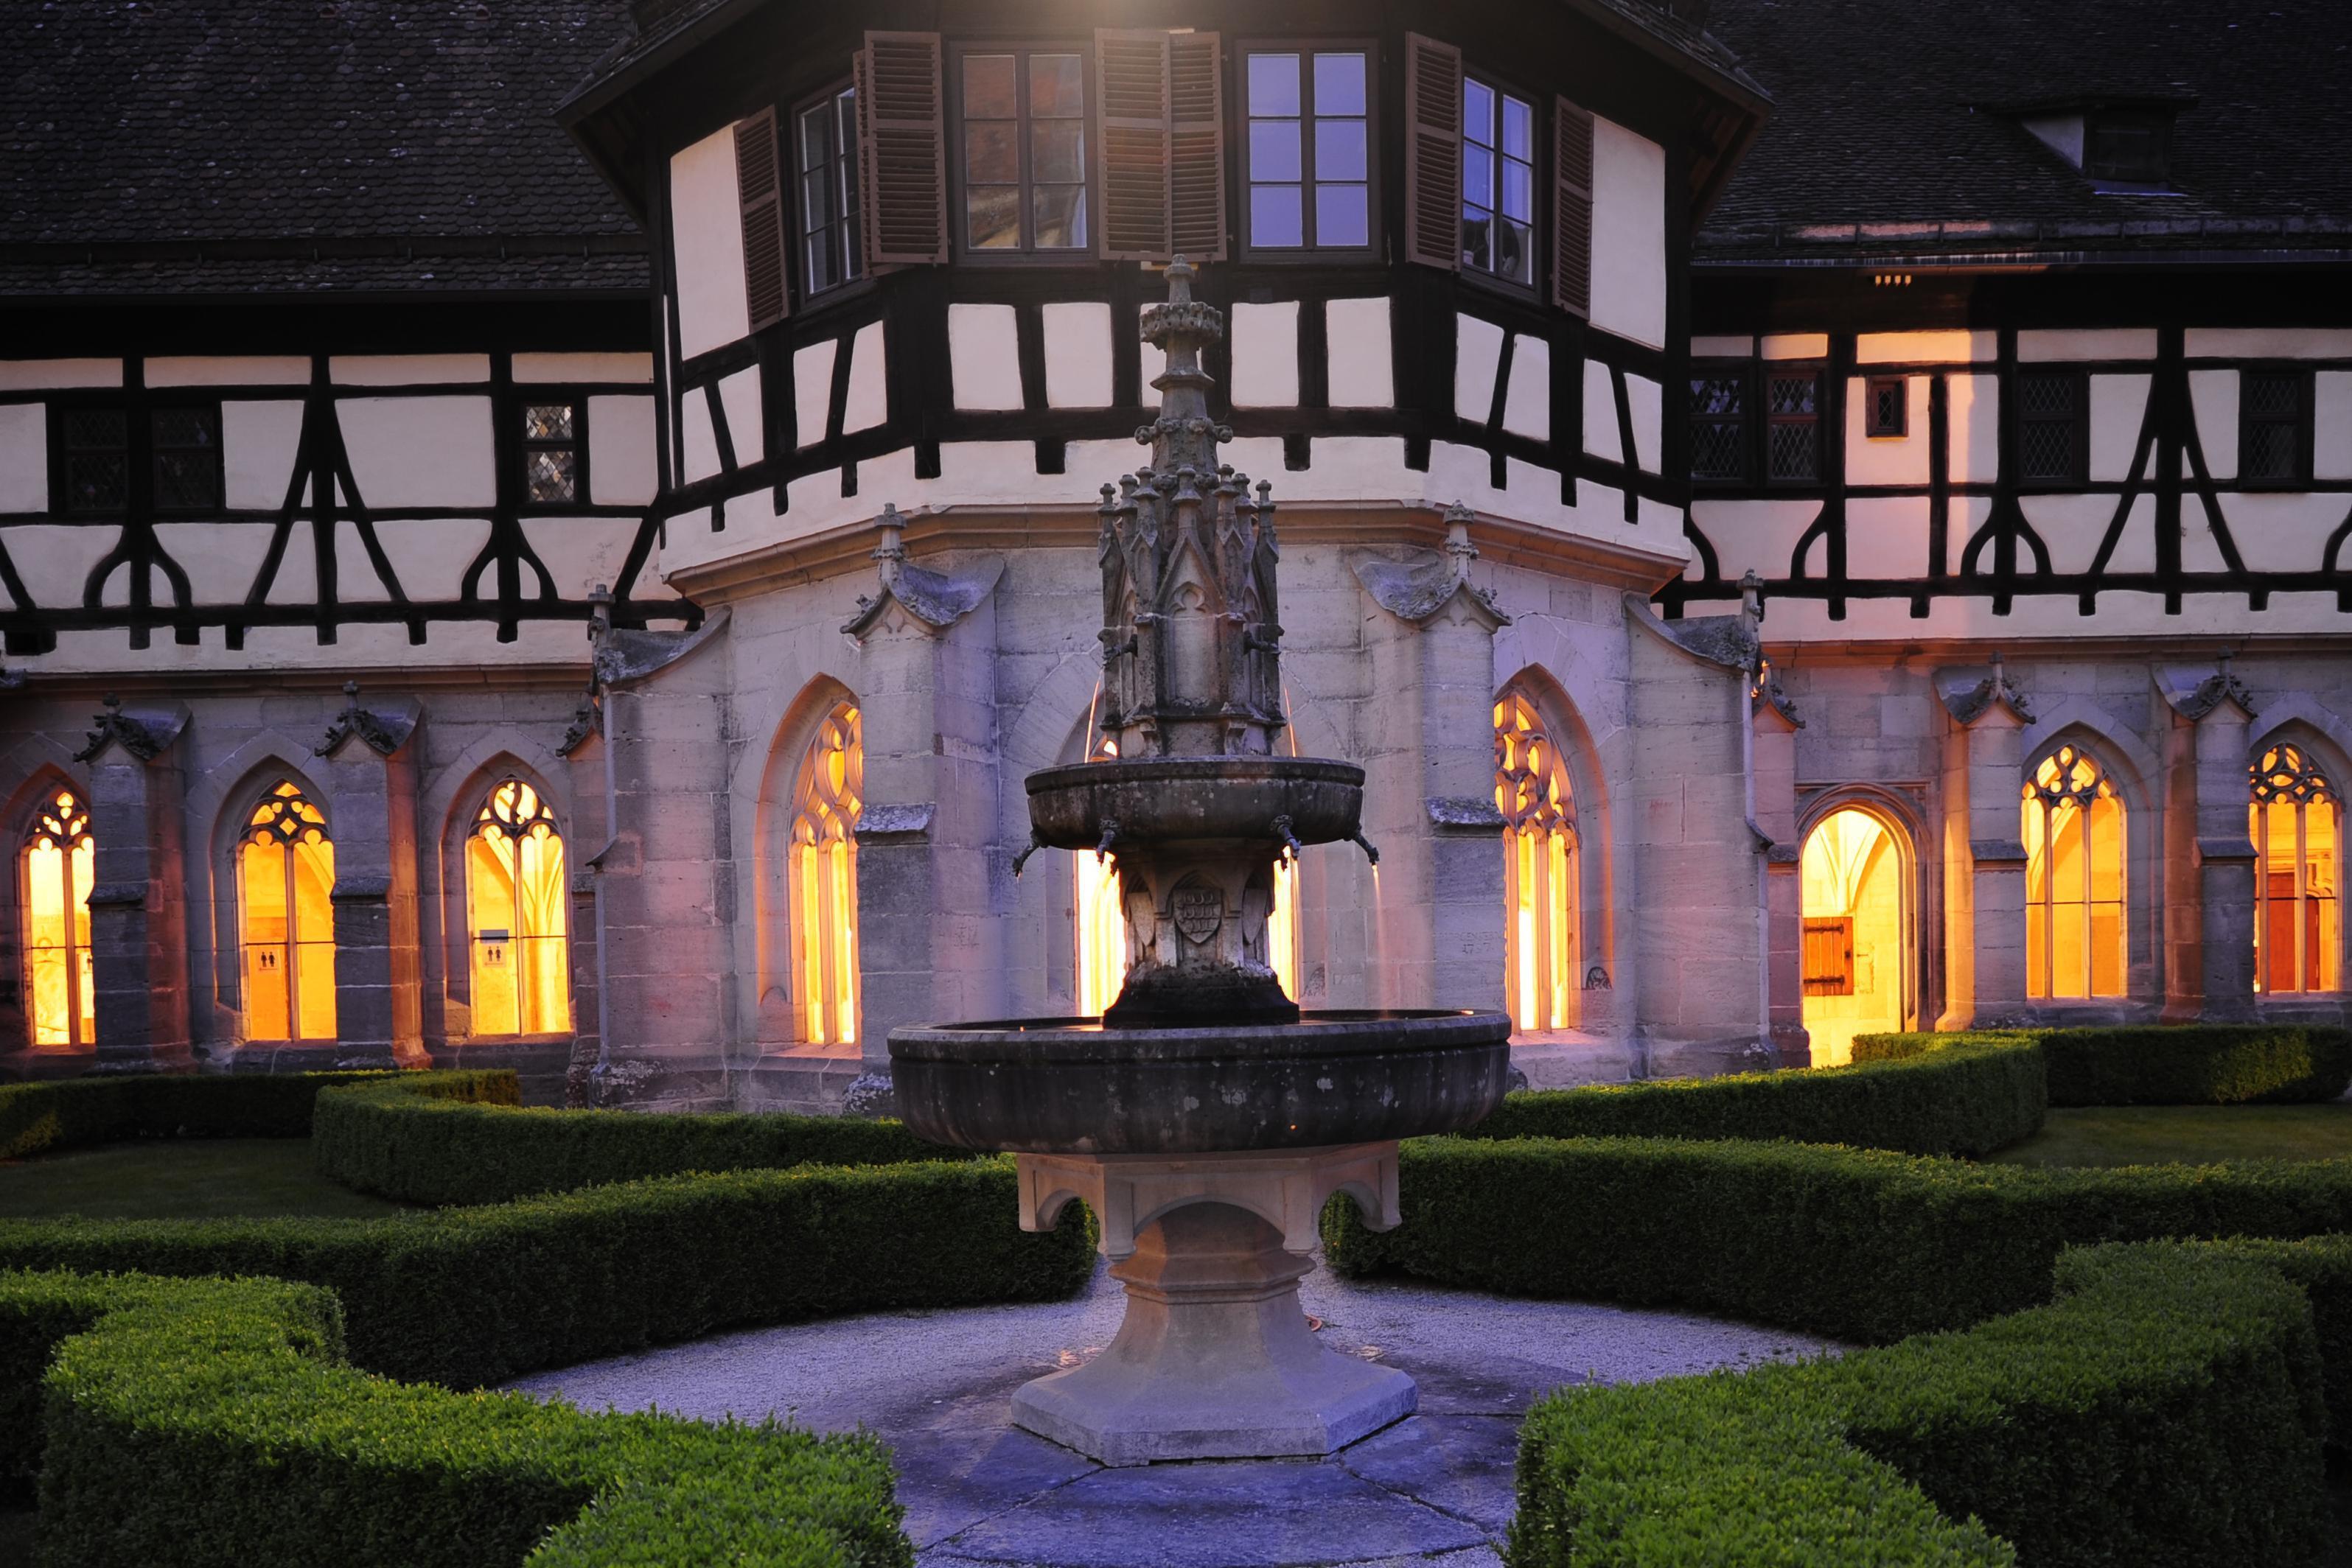 Kloster Bebenhausen, stimmungsvoll beleuchtet